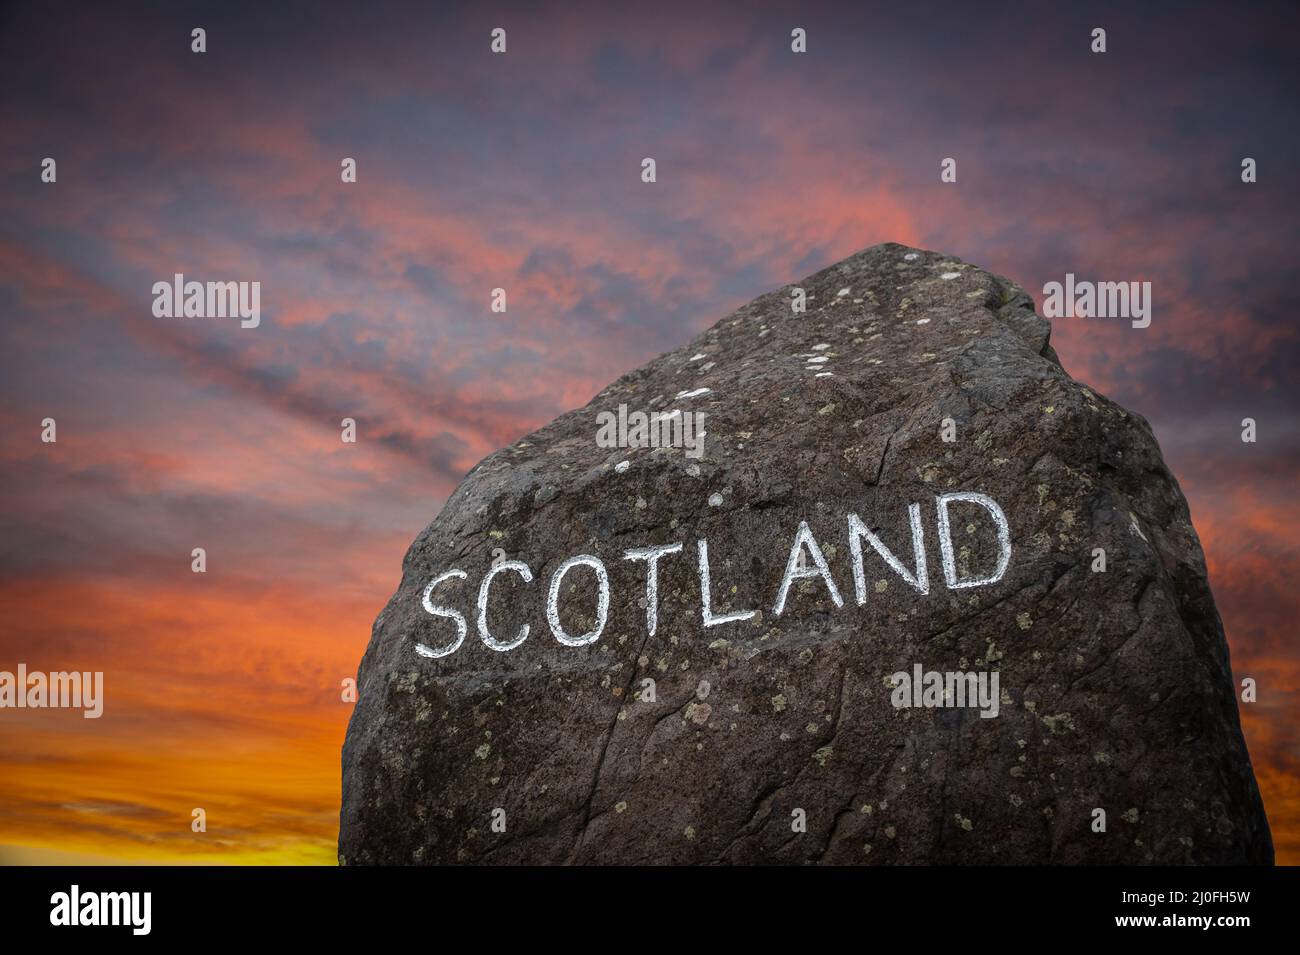 El cartel de la frontera escocesa al atardecer Foto de stock